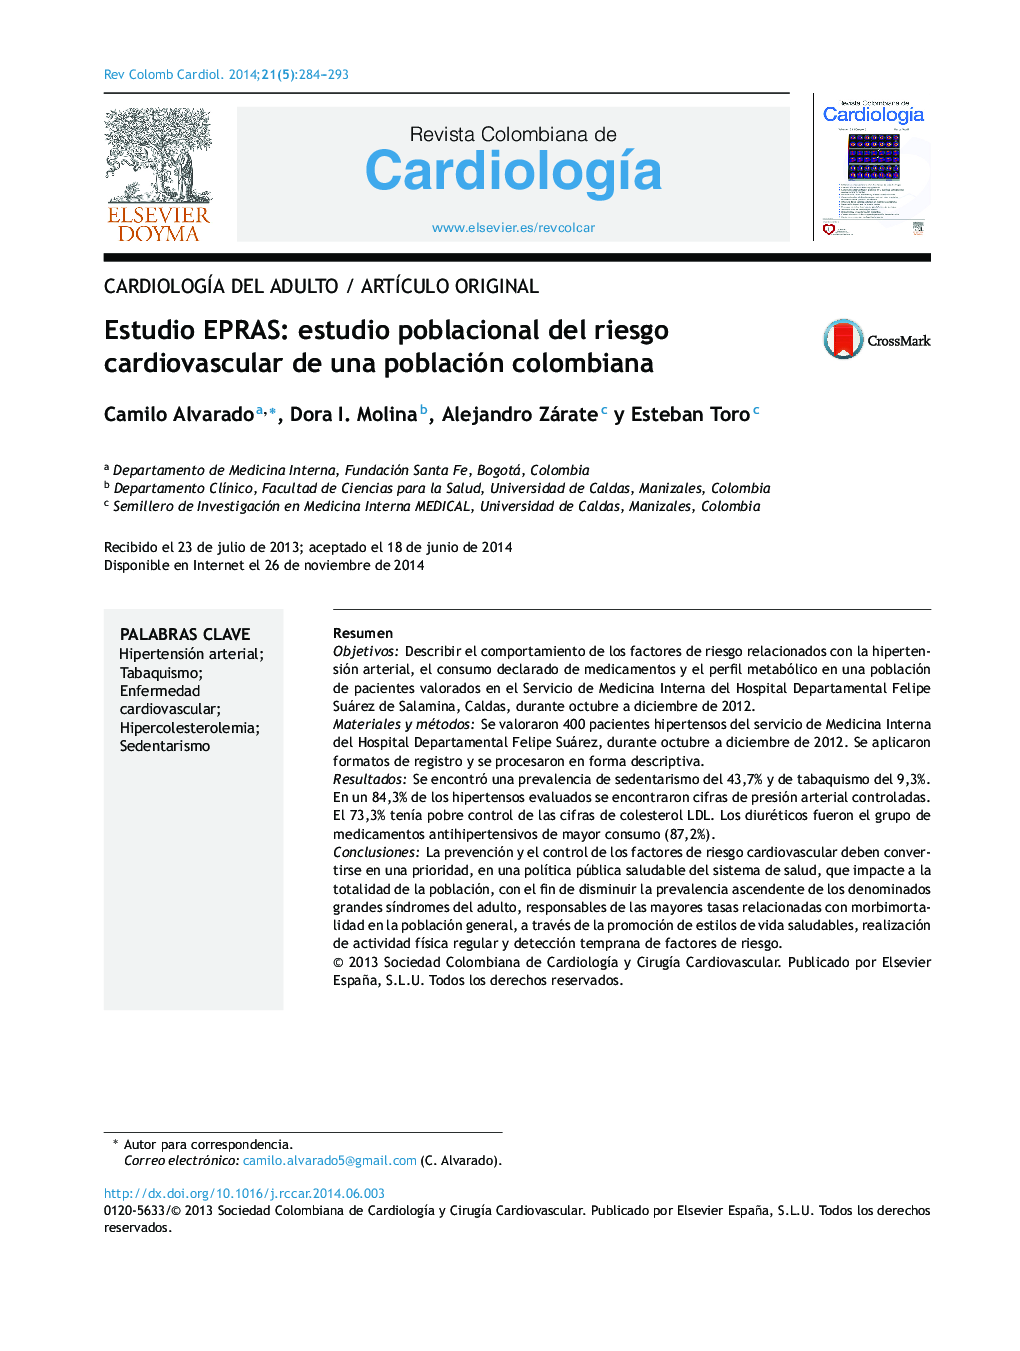 Estudio EPRAS: estudio poblacional del riesgo cardiovascular de una población colombiana